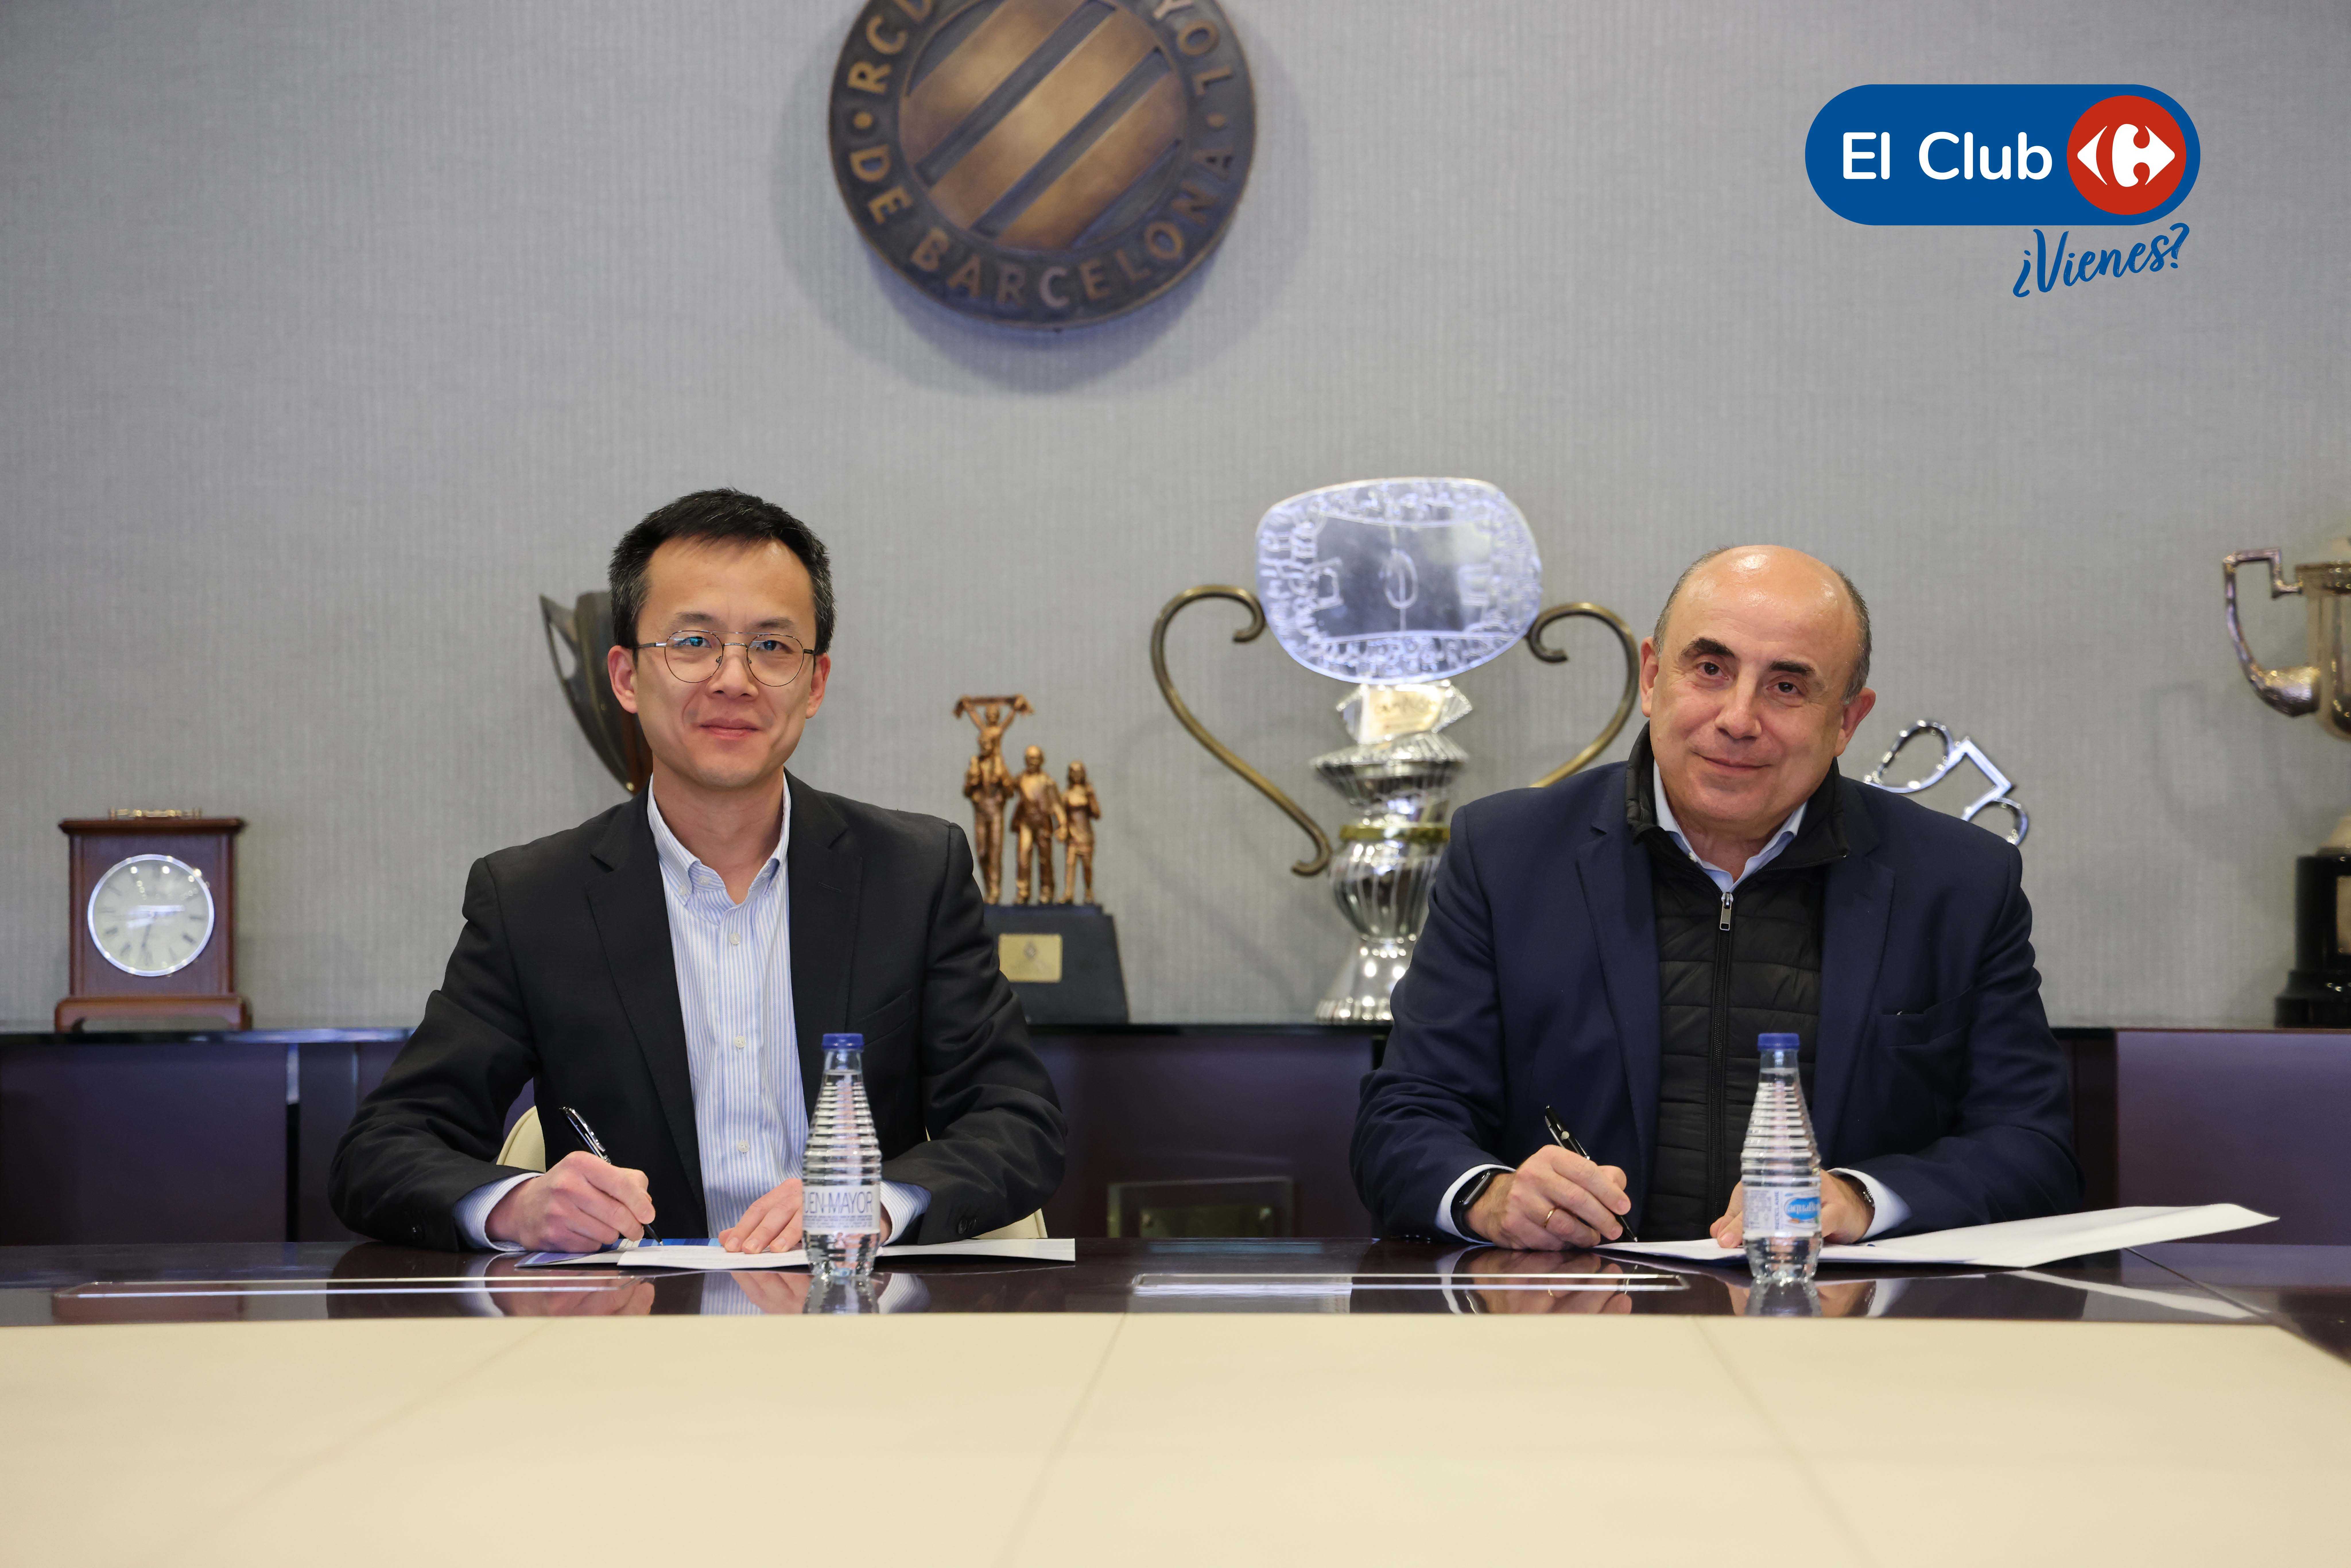 El Club Carrefour nou col·laborador del RCD Espanyol